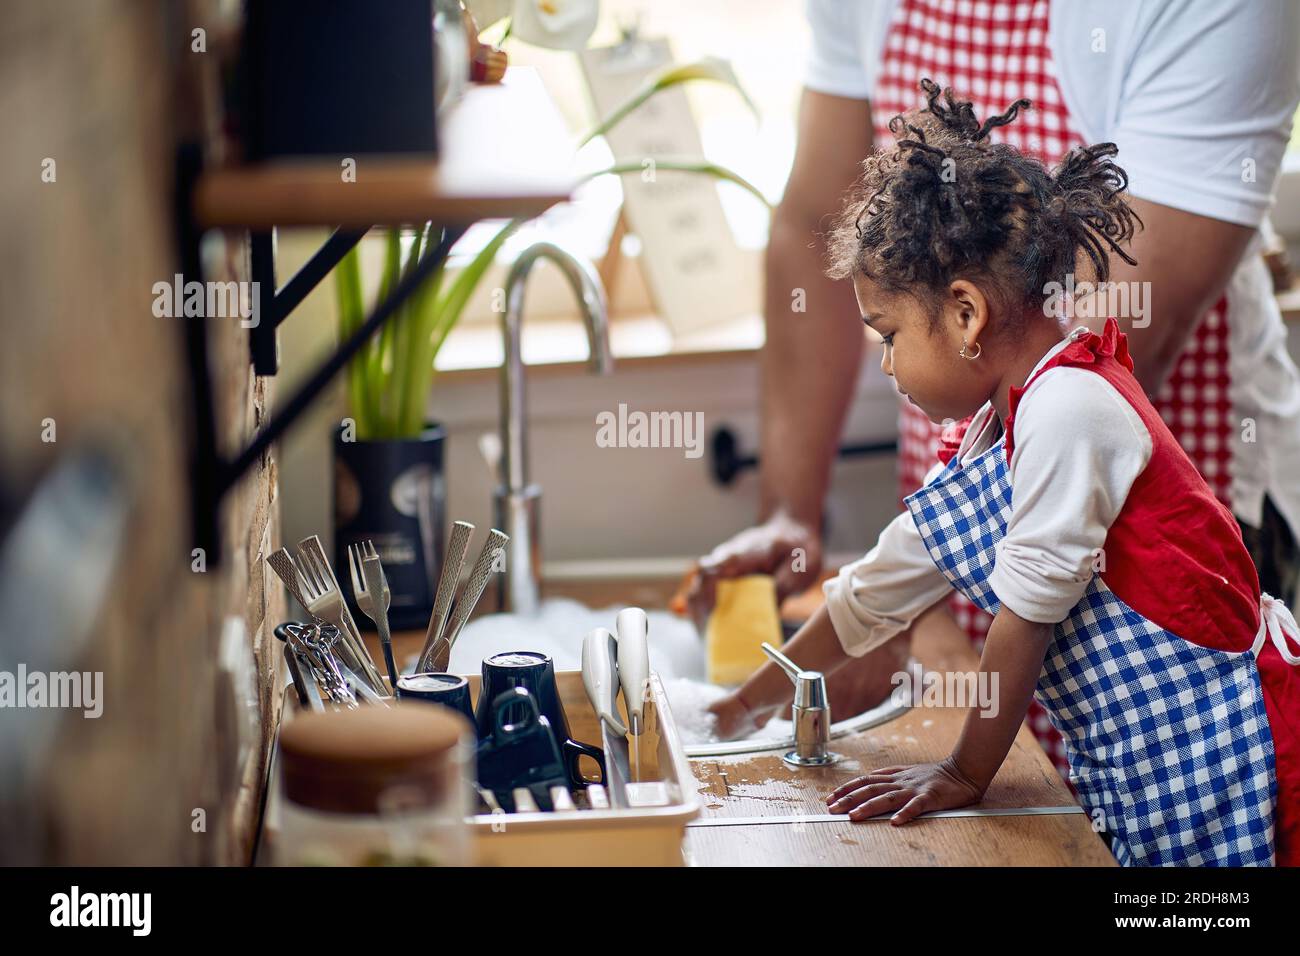 Mignonne petite fille aider son père avec la vaisselle dans une cuisine domestique, laver la vaisselle ensemble, travailler en équipe. Maison, famille, concept de style de vie Banque D'Images